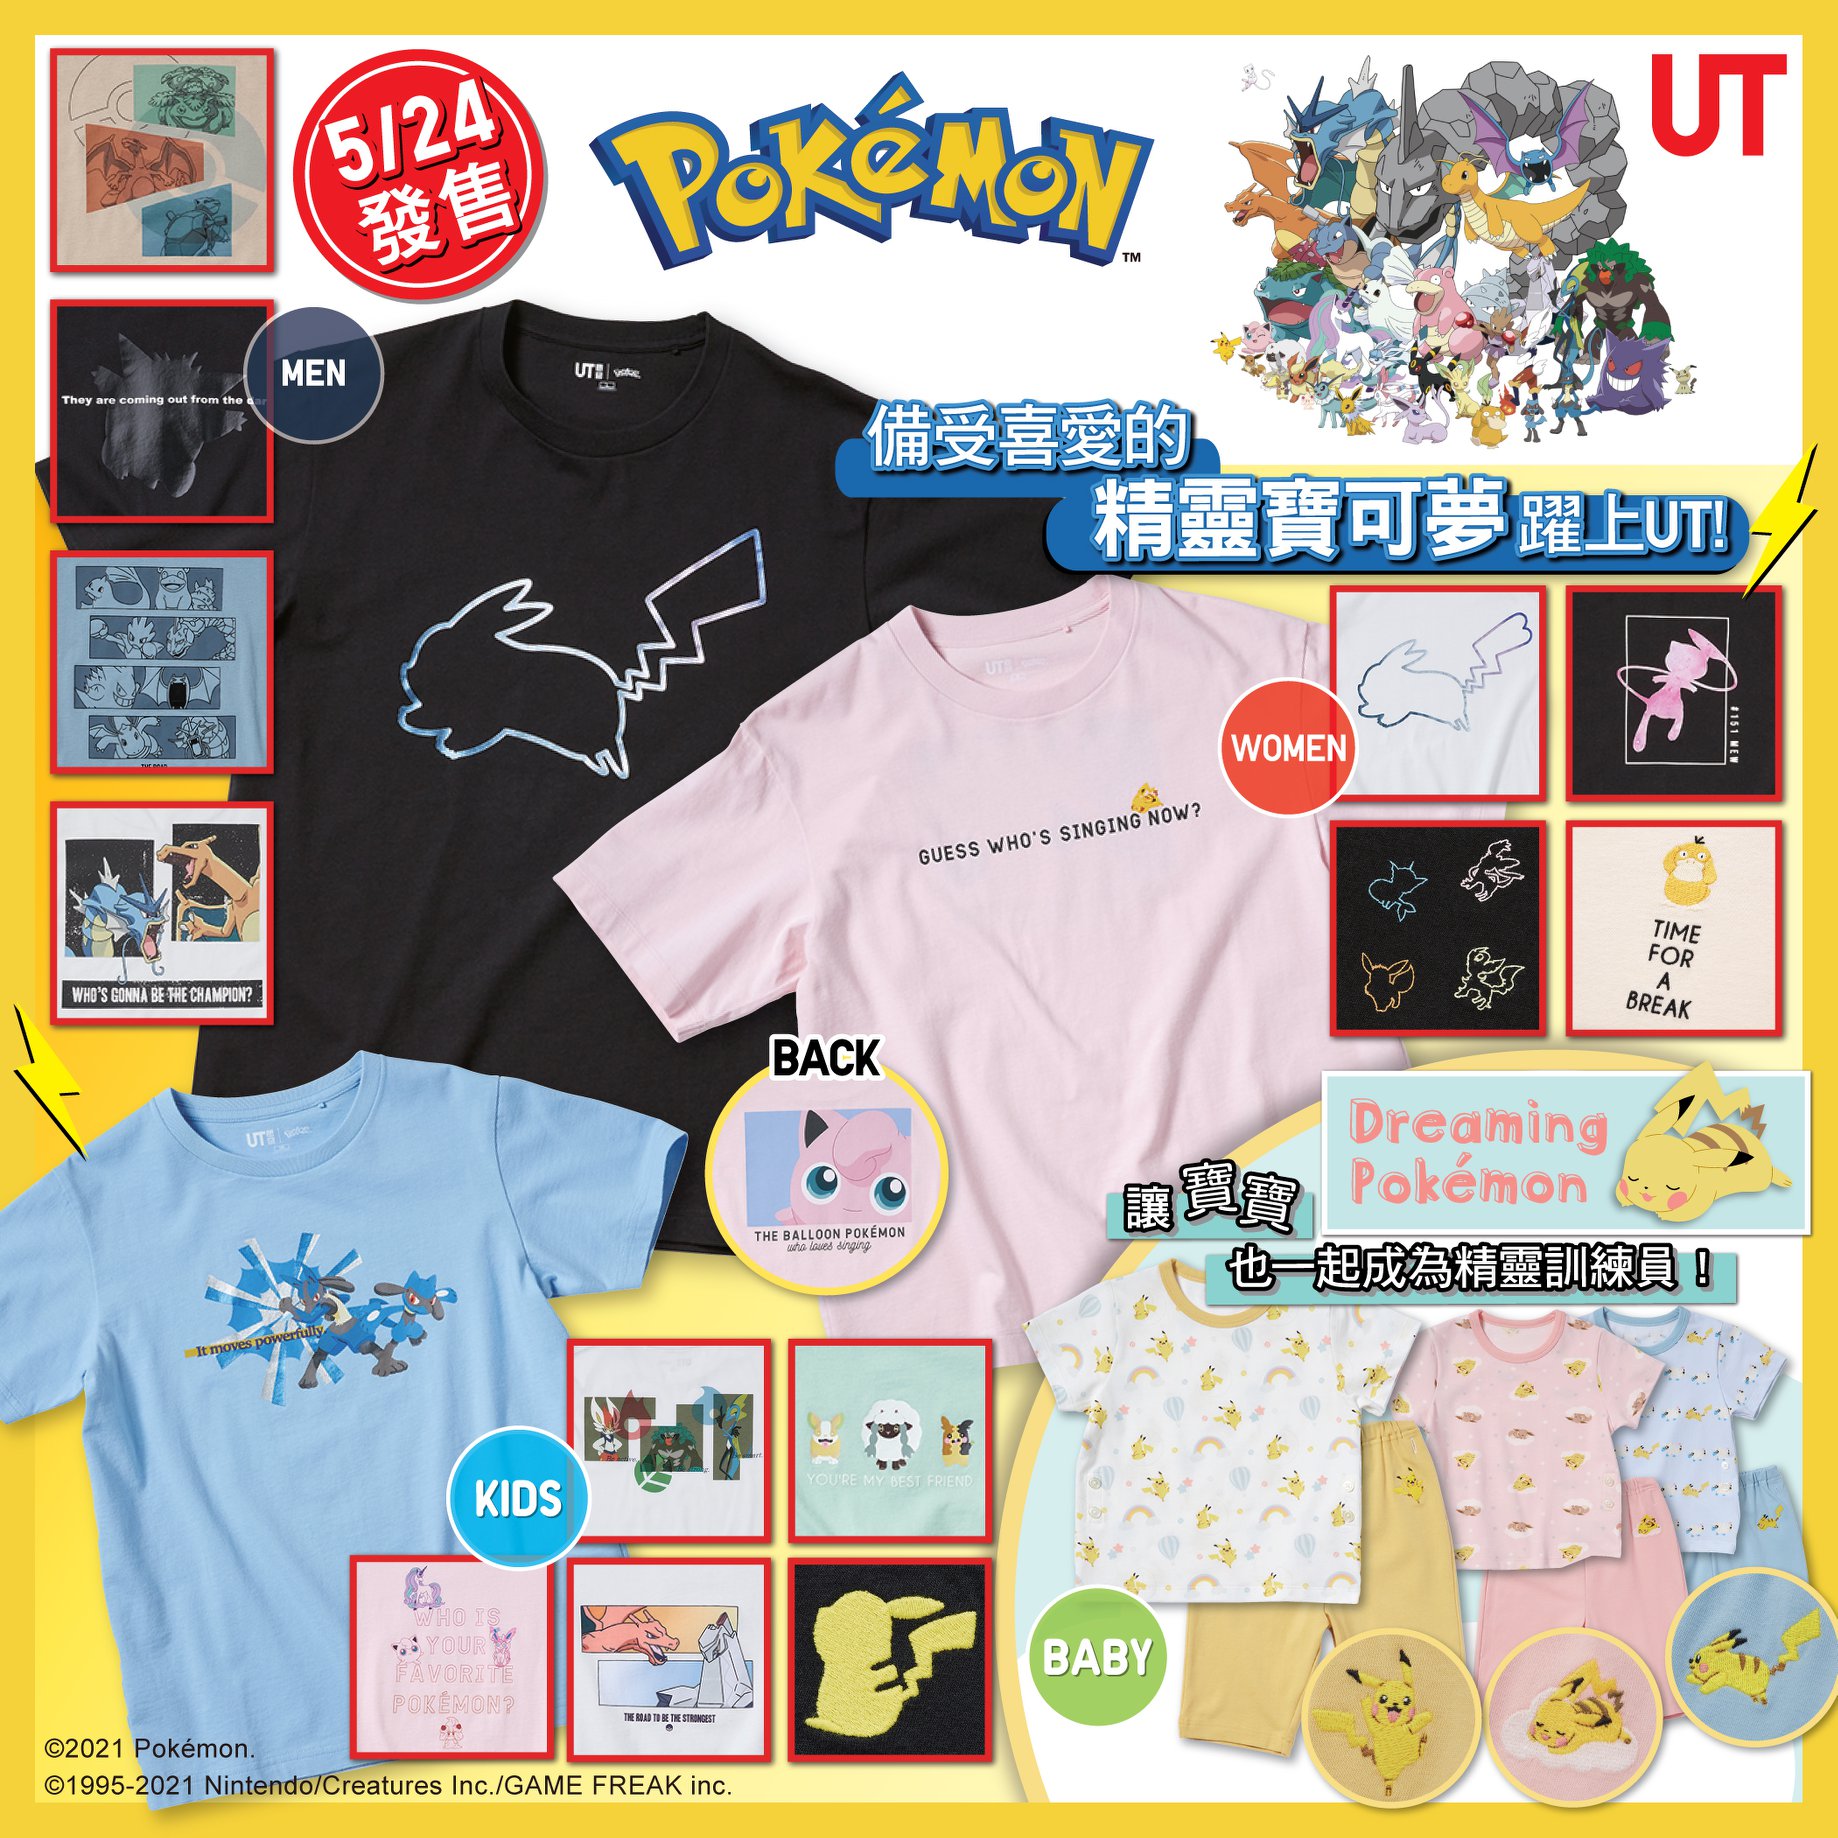 ⚡️ #5/24日發售 : Pokémon All-Stars 及 Dreaming Pokémon UT 系列⚡️  